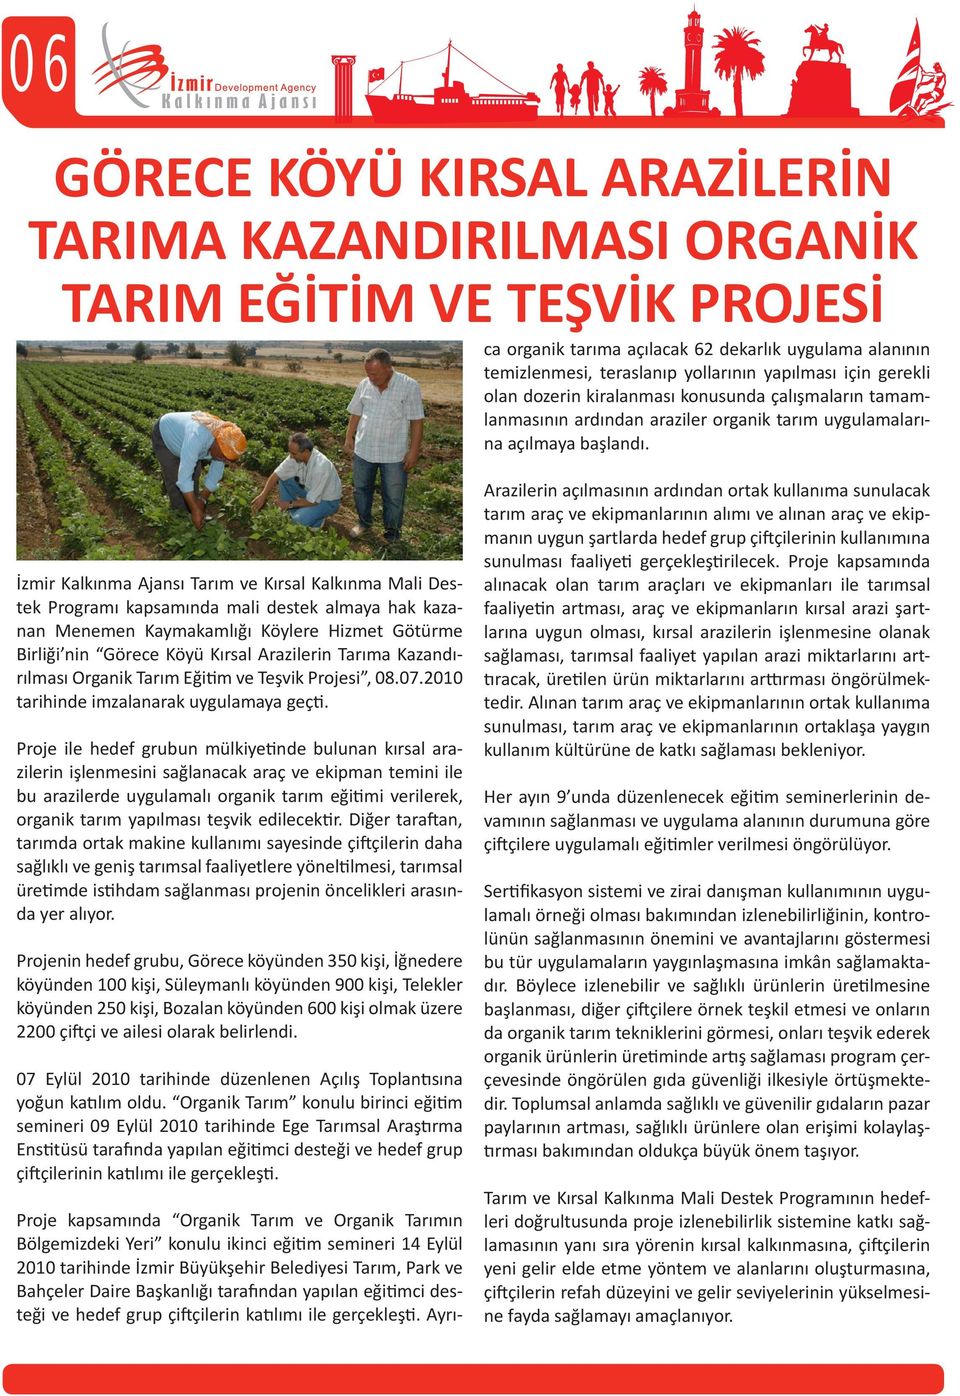 İzmir Kalkınma Ajansı Tarım ve Kırsal Kalkınma Mali Destek Programı kapsamında mali destek almaya hak kazanan Menemen Kaymakamlığı Köylere Hizmet Götürme Birliği nin Görece Köyü Kırsal Arazilerin